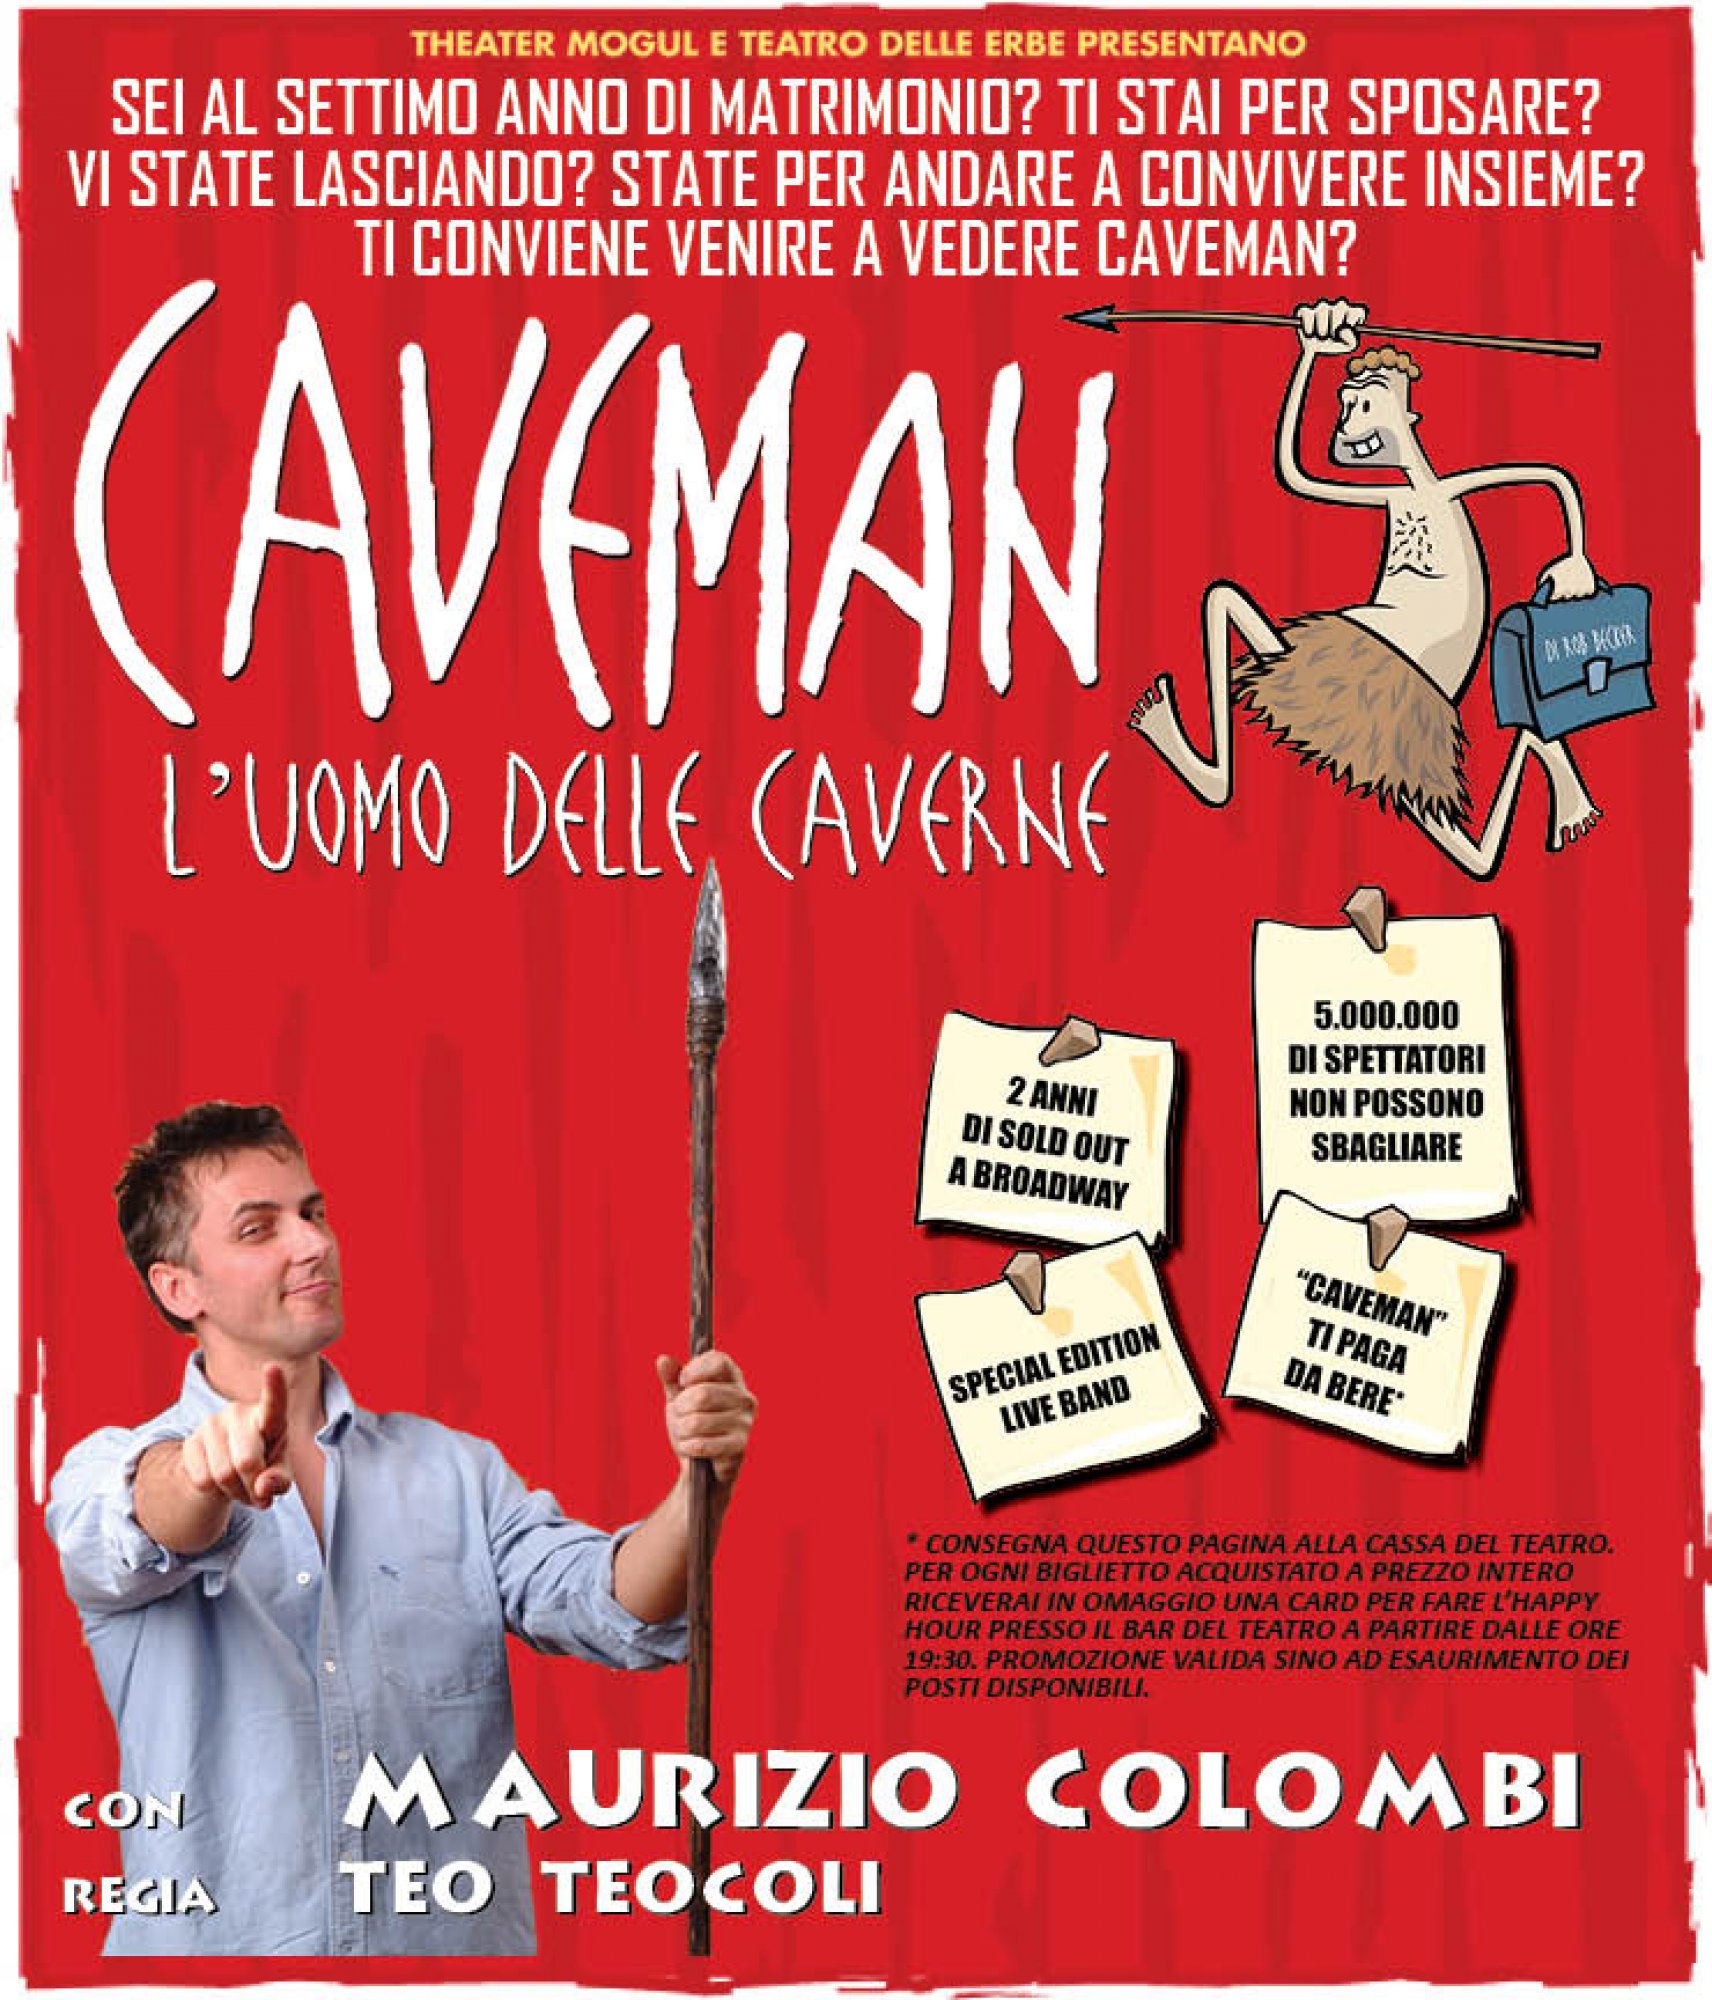 CAVEMAN – L’uomo delle caverne